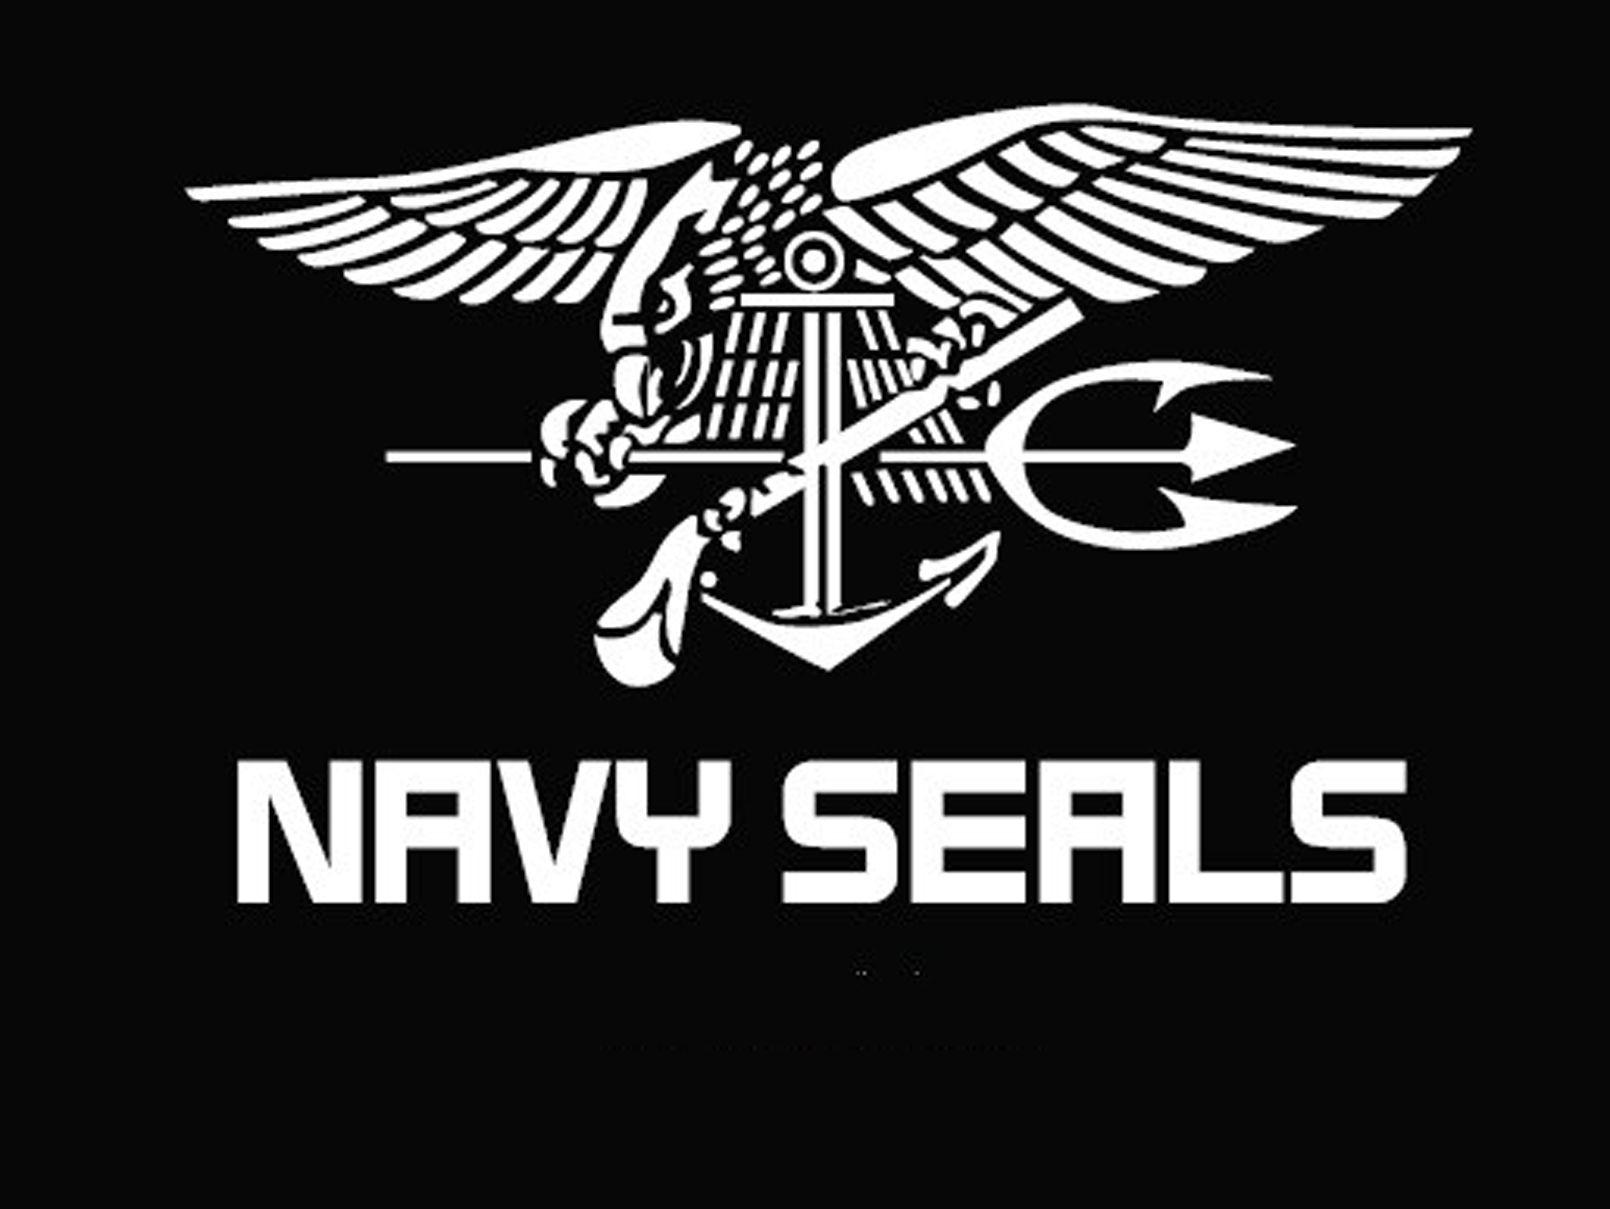 Navy Seals Emblem Wallpaper